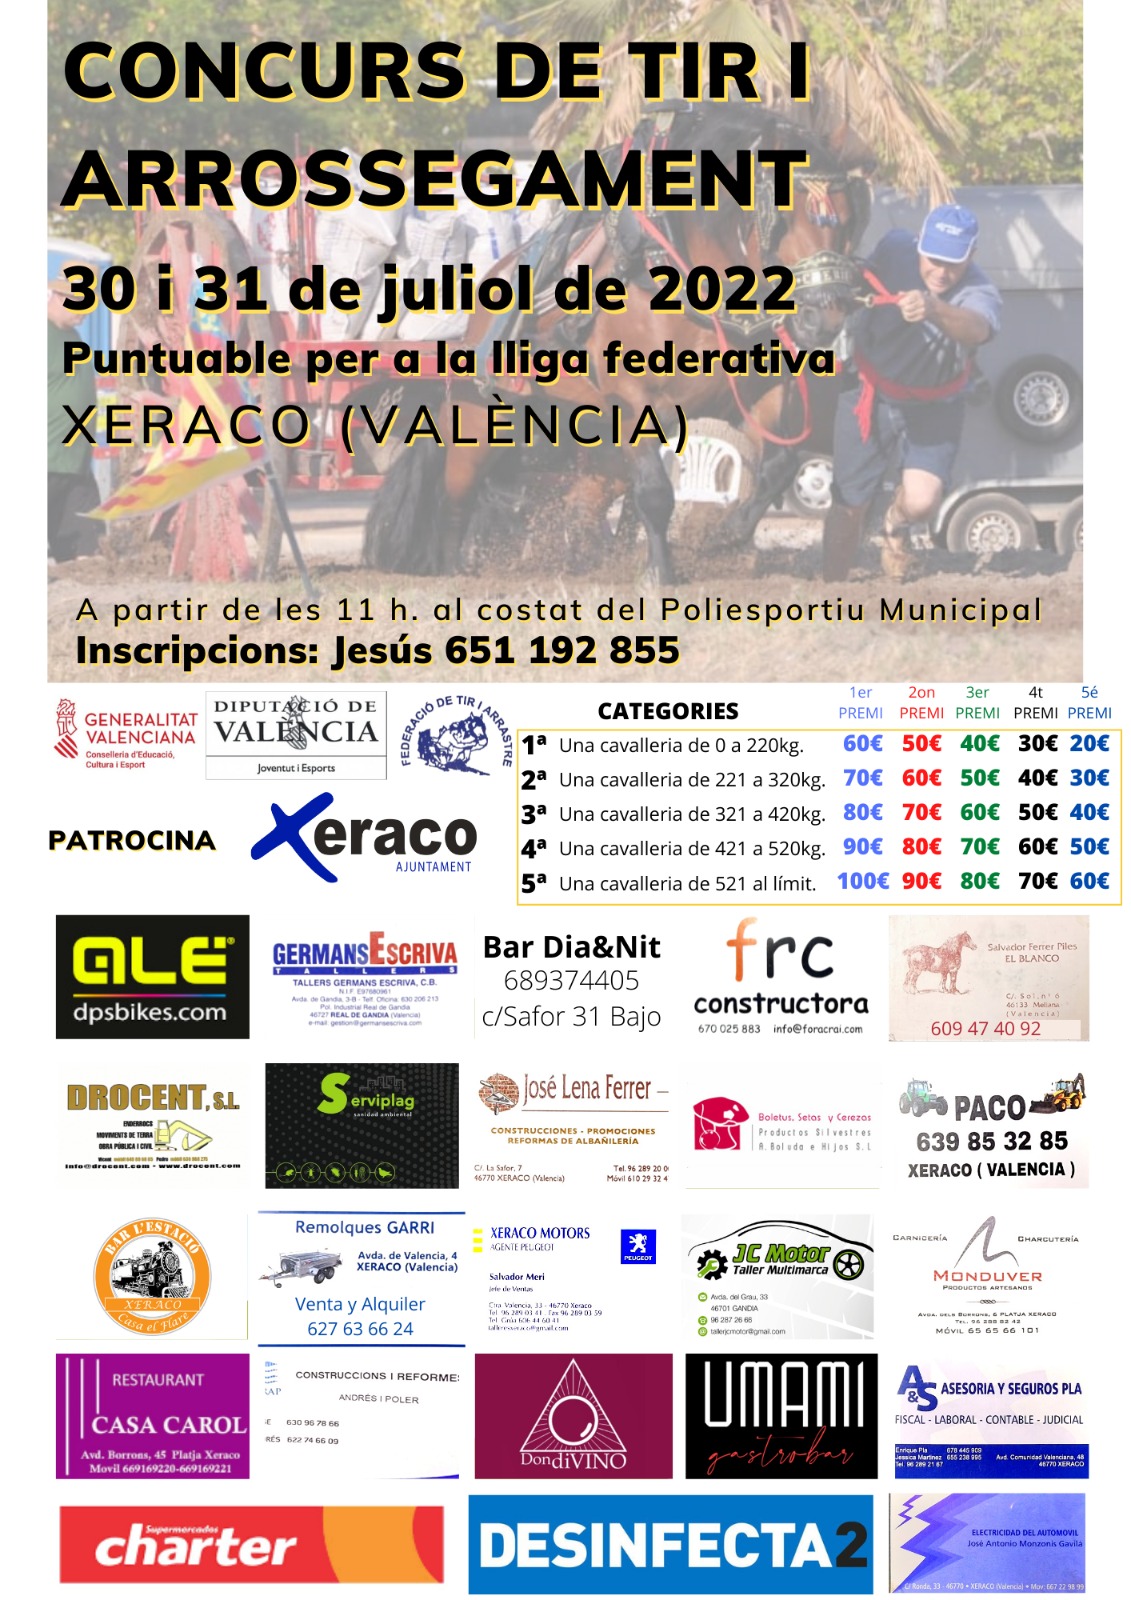 Tir Xeraco 2022 – Díes 30 i 31 de Juliol